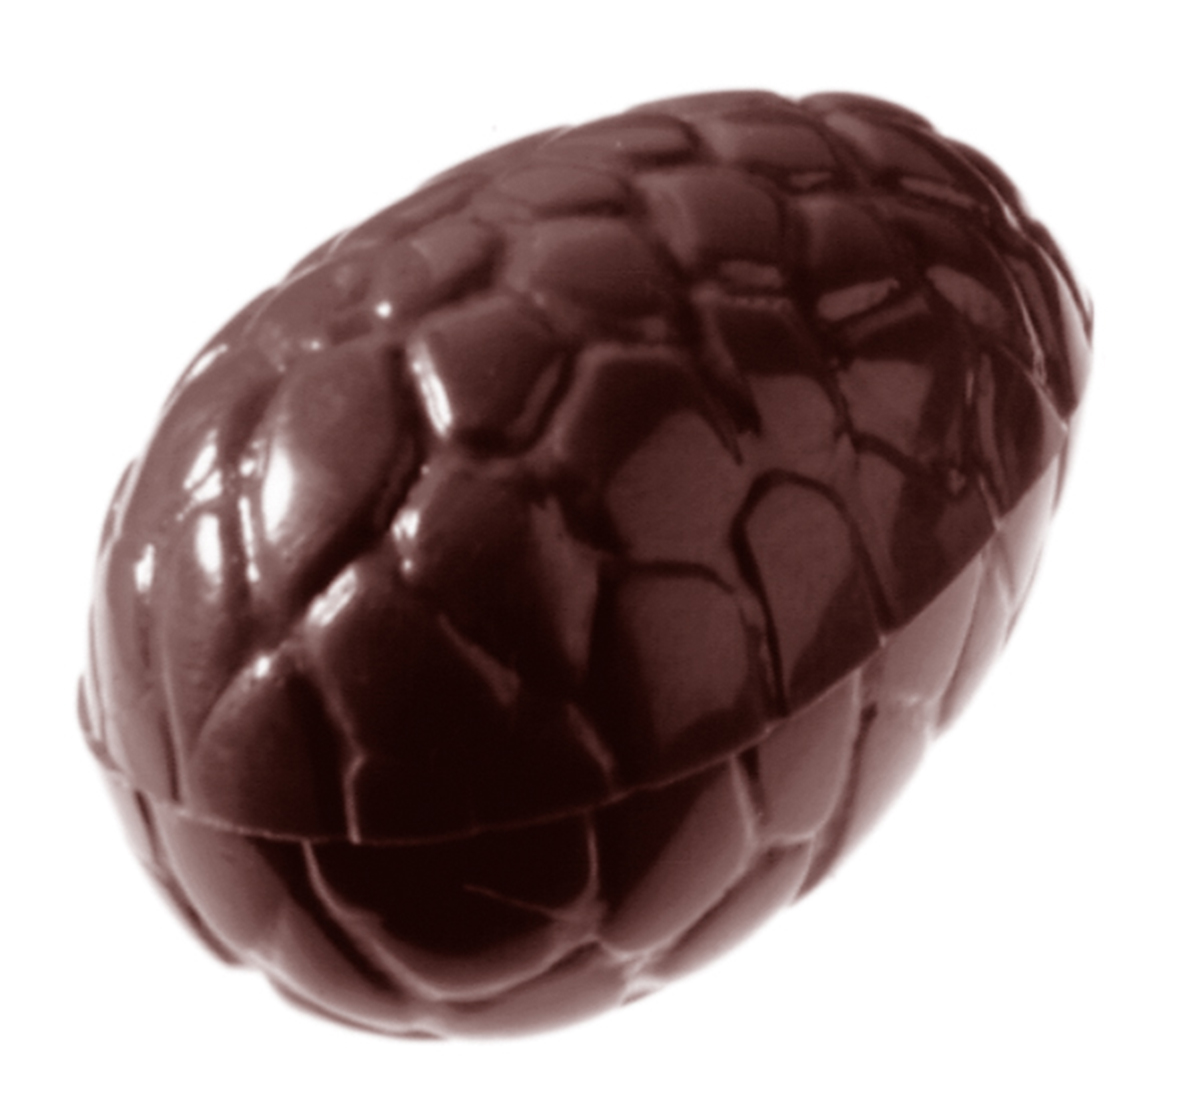 Se Professionel chokoladeform i polycarbonat - Egg kroko 3,5 cm CW1537 hos BageTid.dk